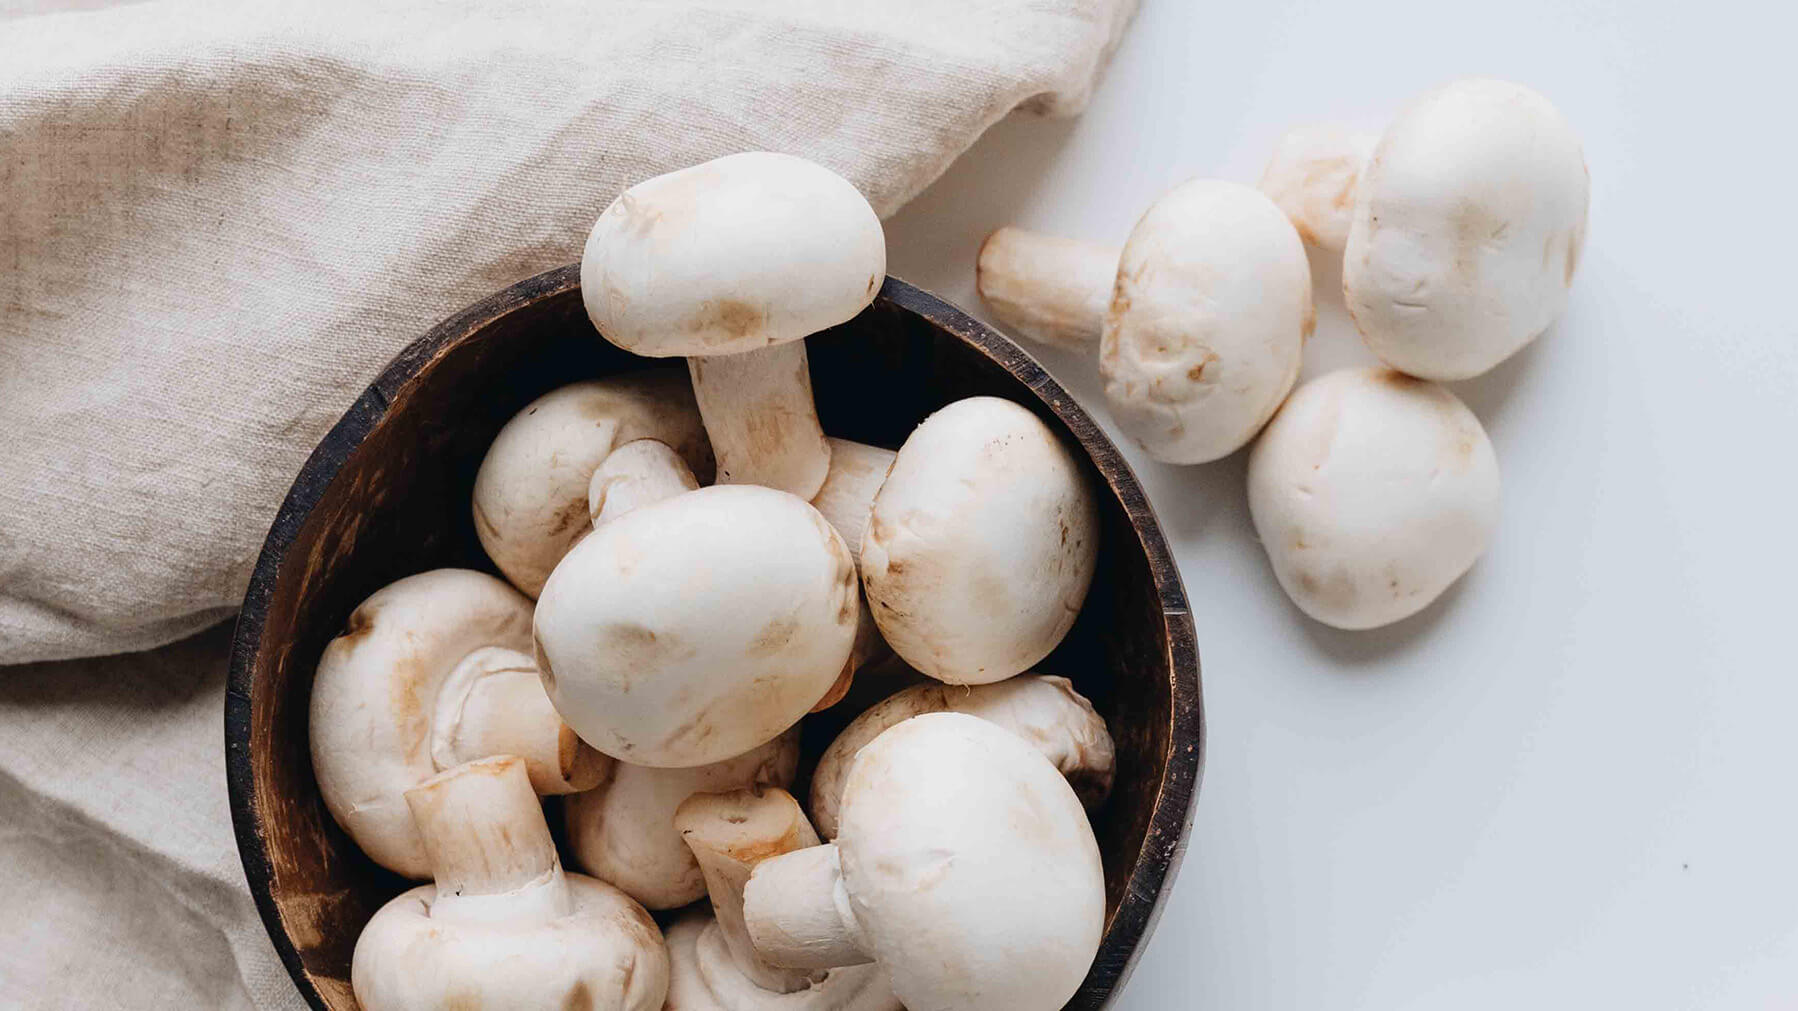 Hillbilly Mushrooms: A Hidden Delight in the Wild